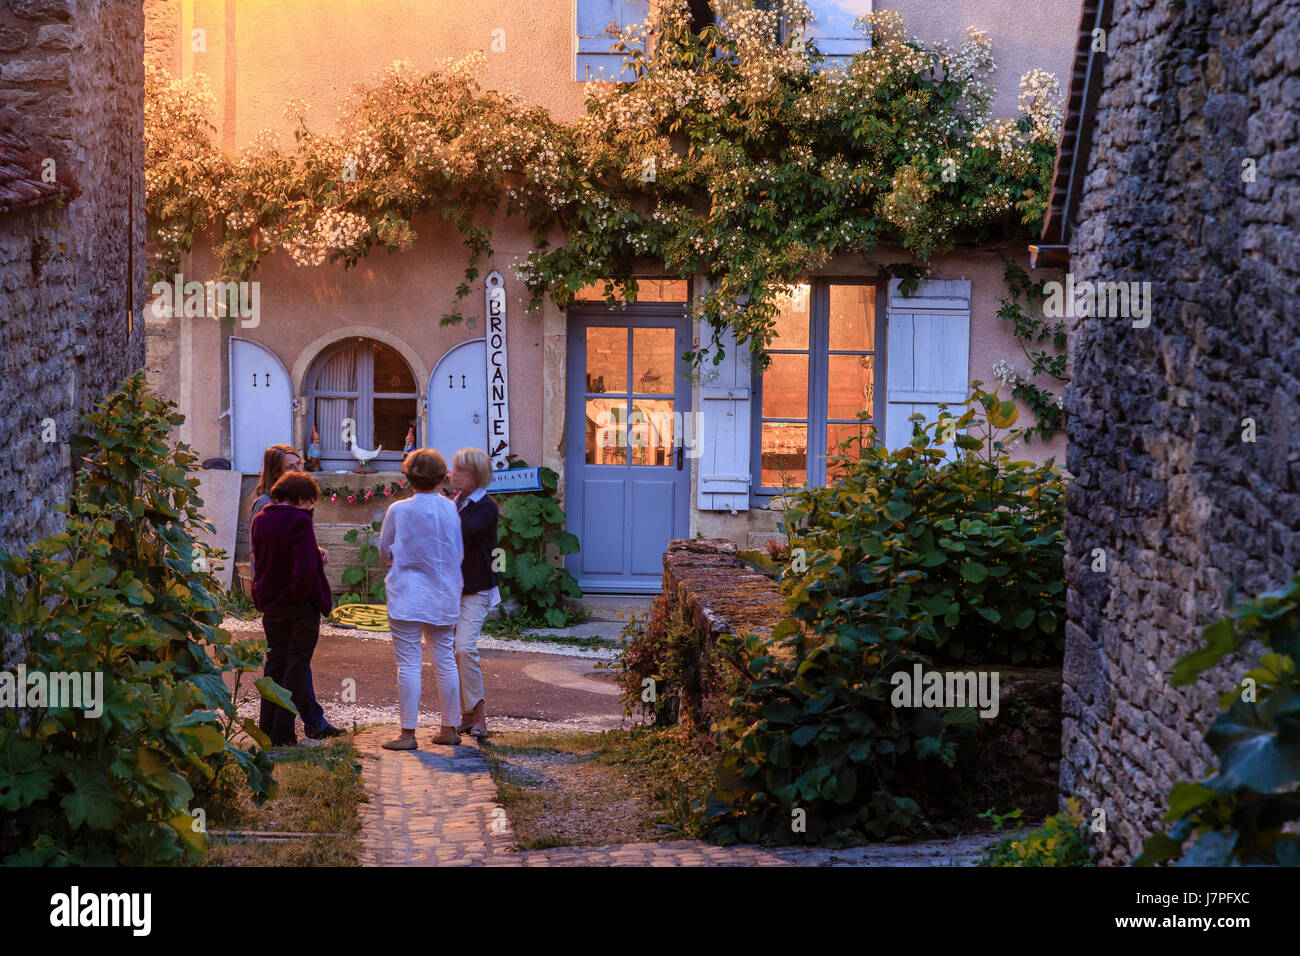 Francia, Cote d'Or, regione della Borgogna, Chateauneuf en Auxois, o Chateauneuf, etichettato Les Plus Beaux Villages de France, nel villaggio di sera Foto Stock